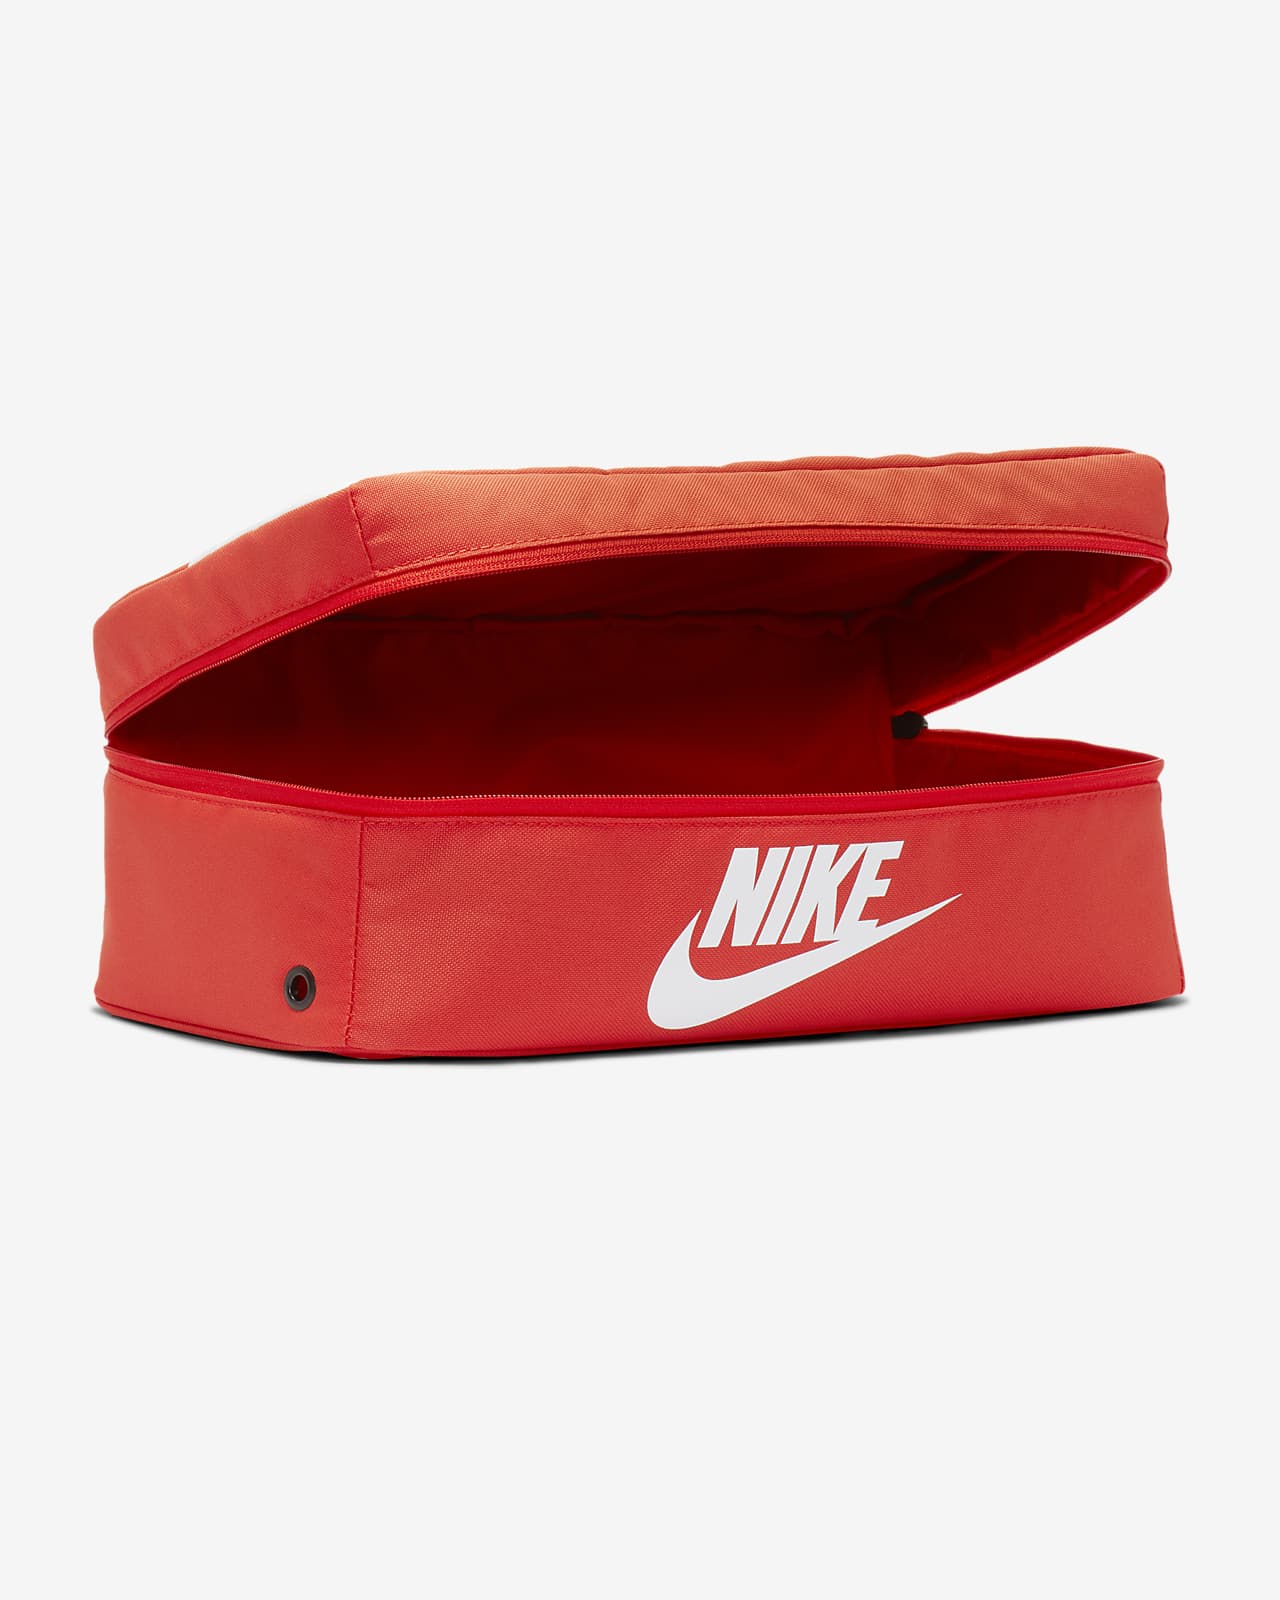 Nike Shoebox Bag (10L).